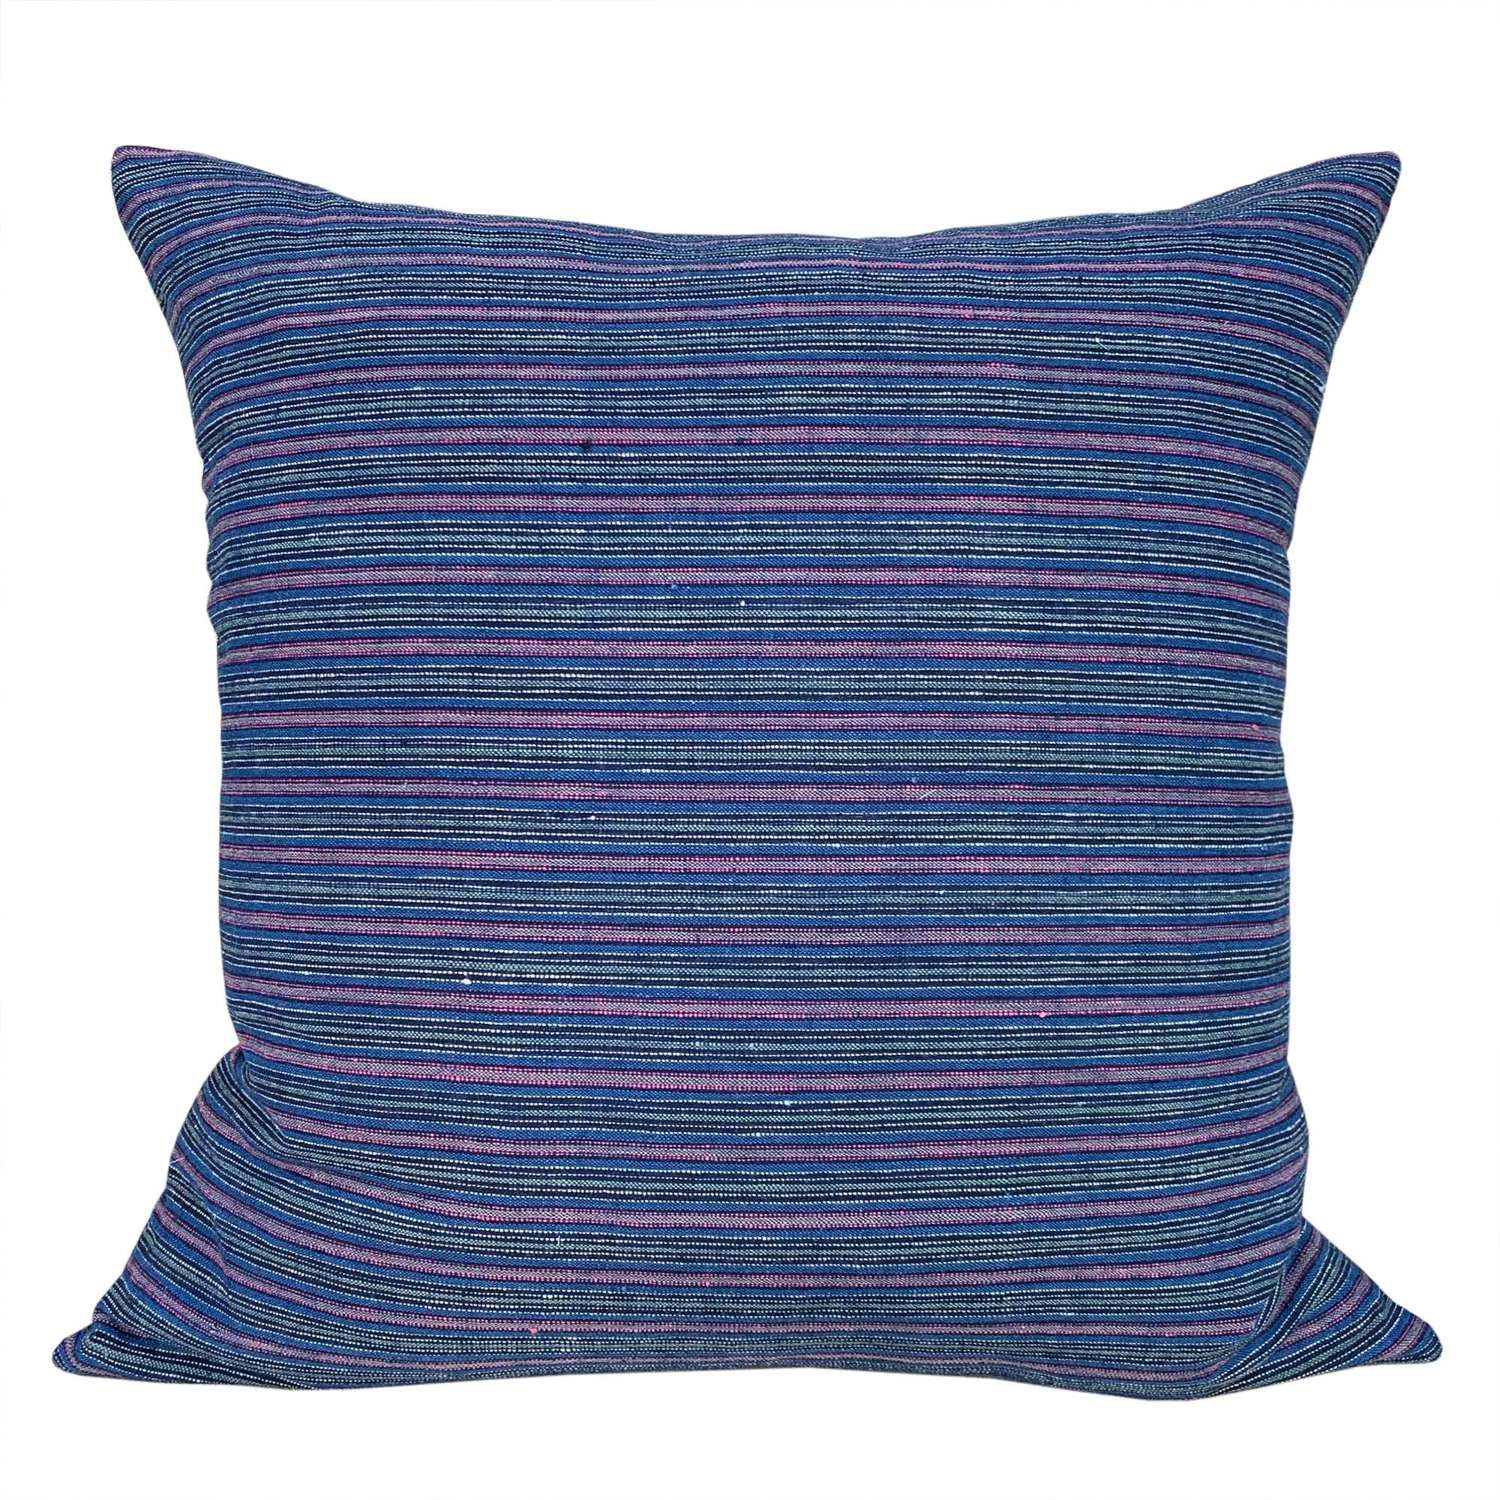 Songjiang narrow stripe cushion